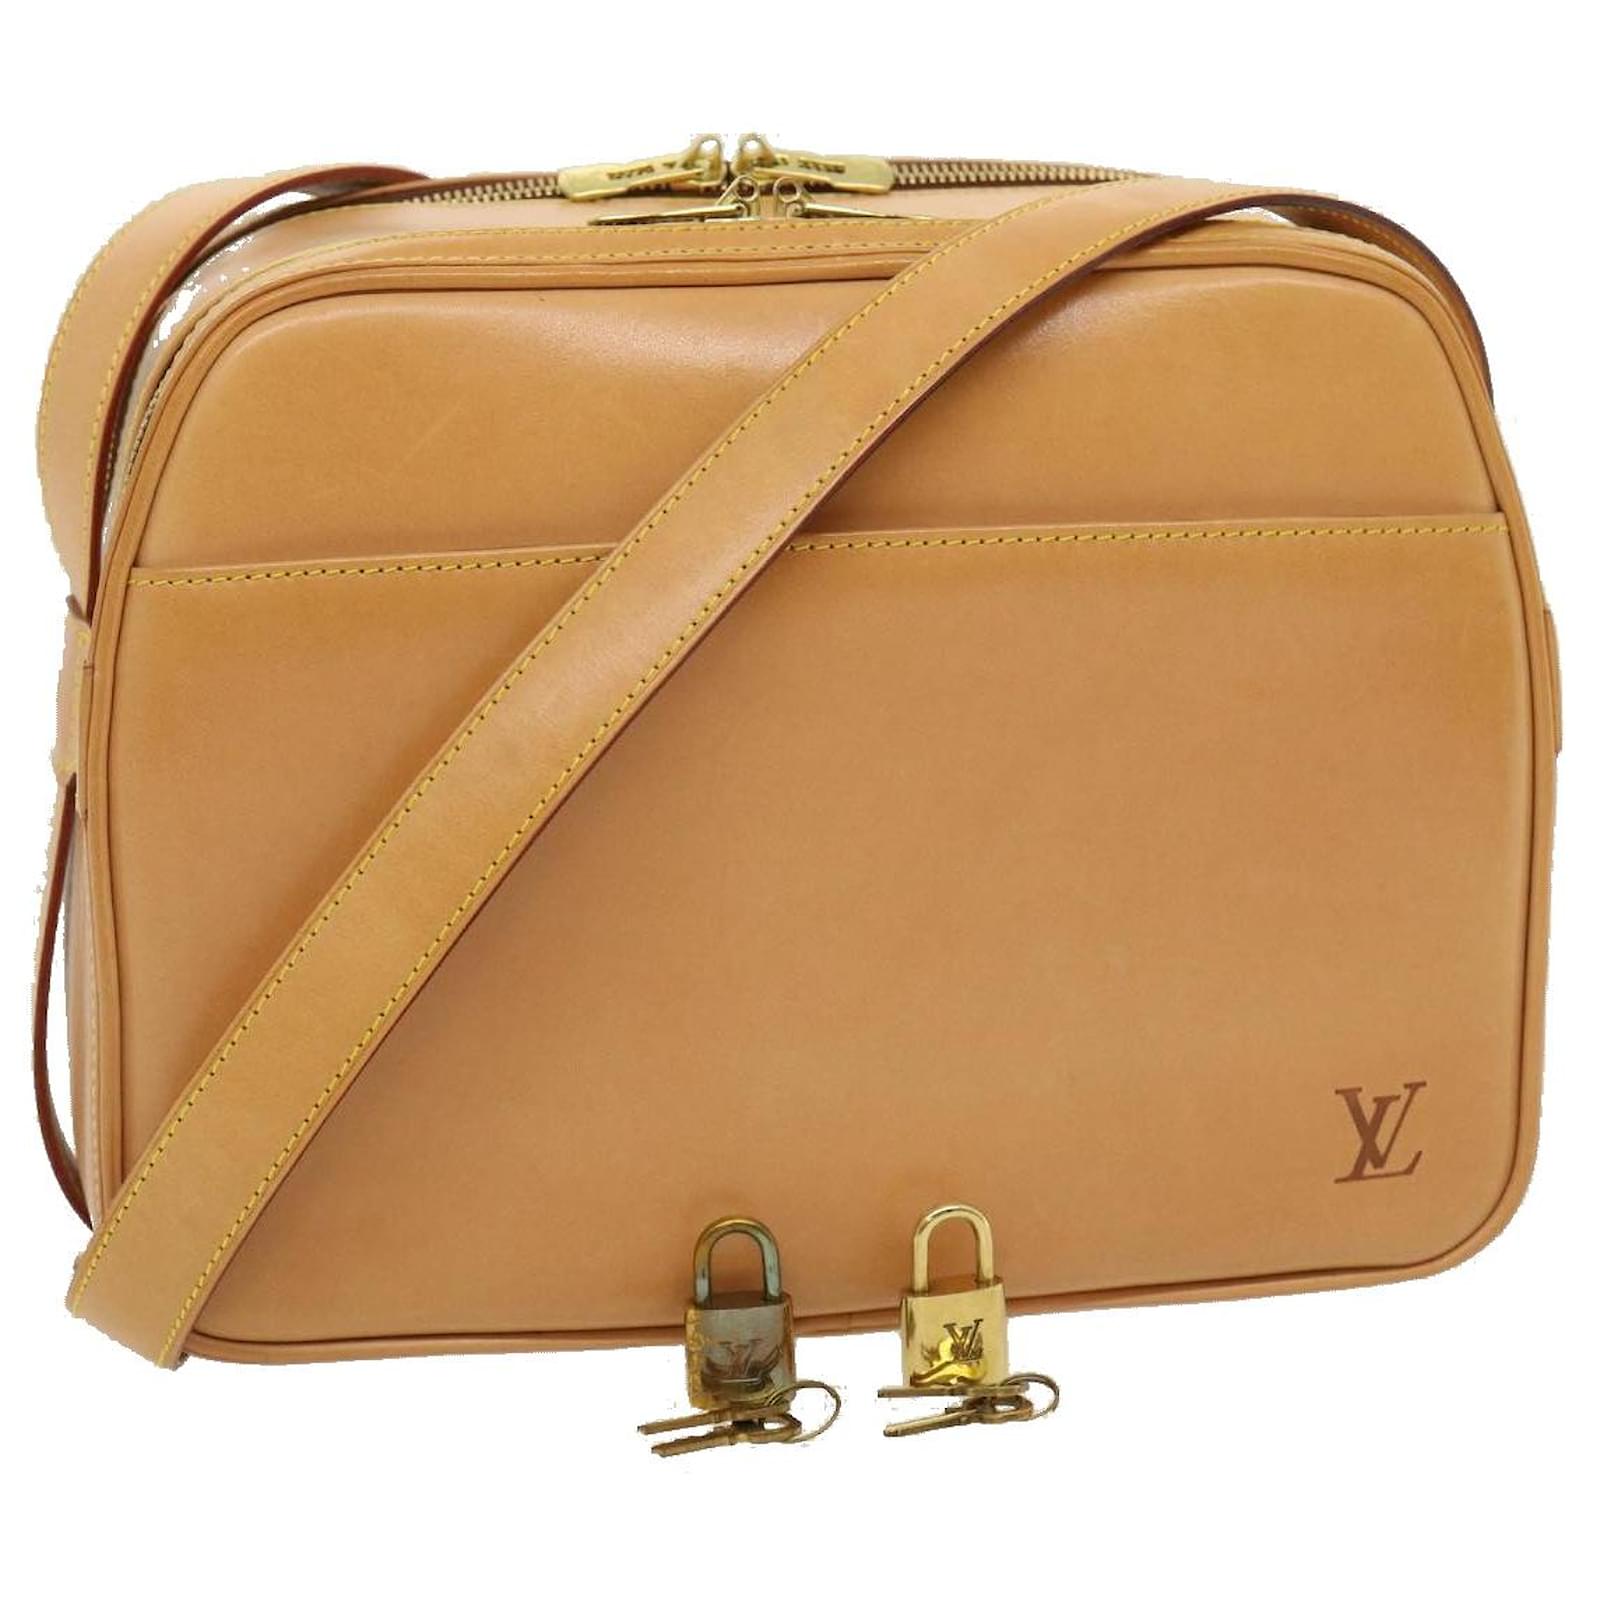 Louis Vuitton Pre-Owned Dalmatian Shoulder Bag